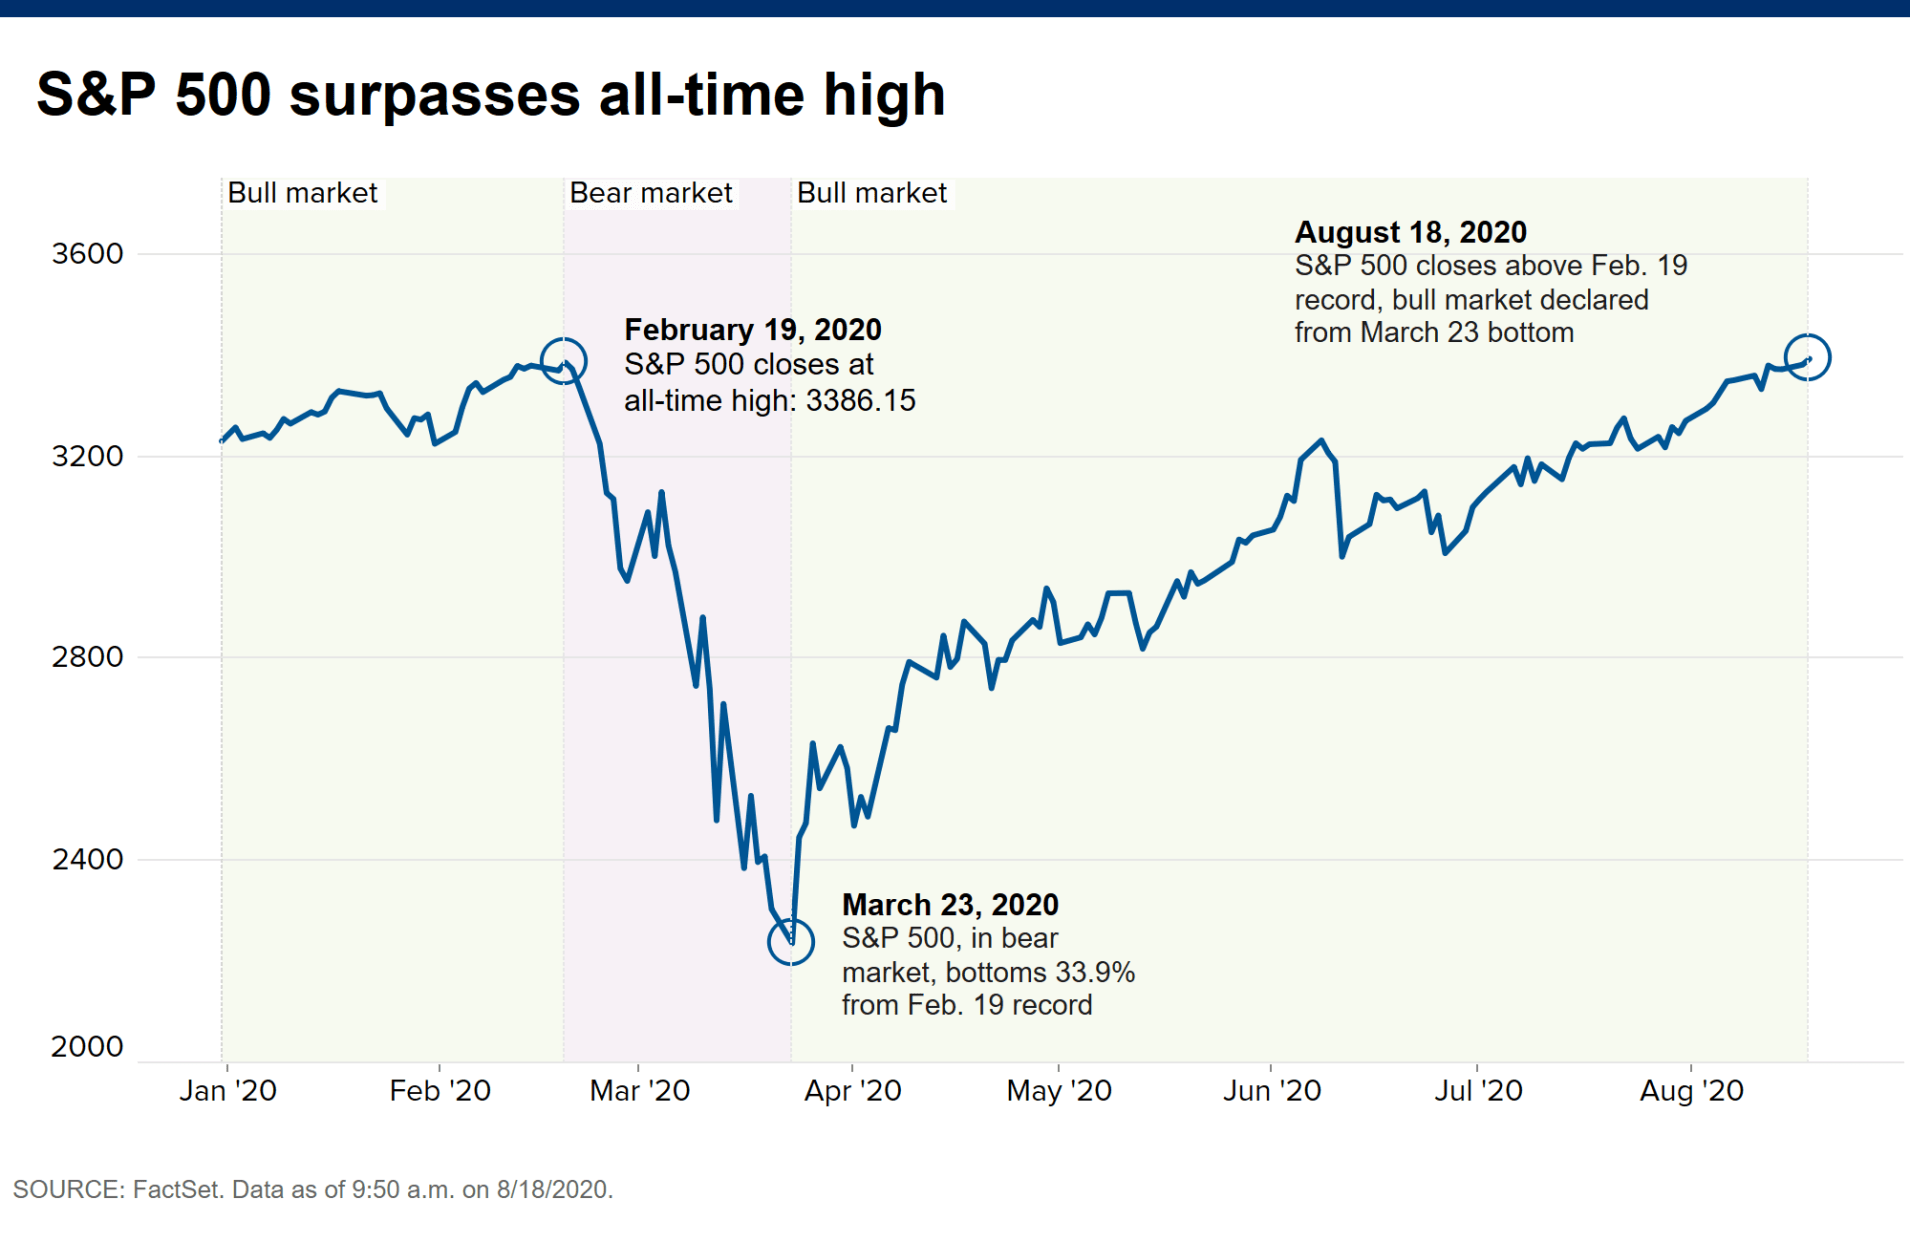 Раздача денег американцам сработала. Итог - абсолютный рекорд индекса S&P 500  